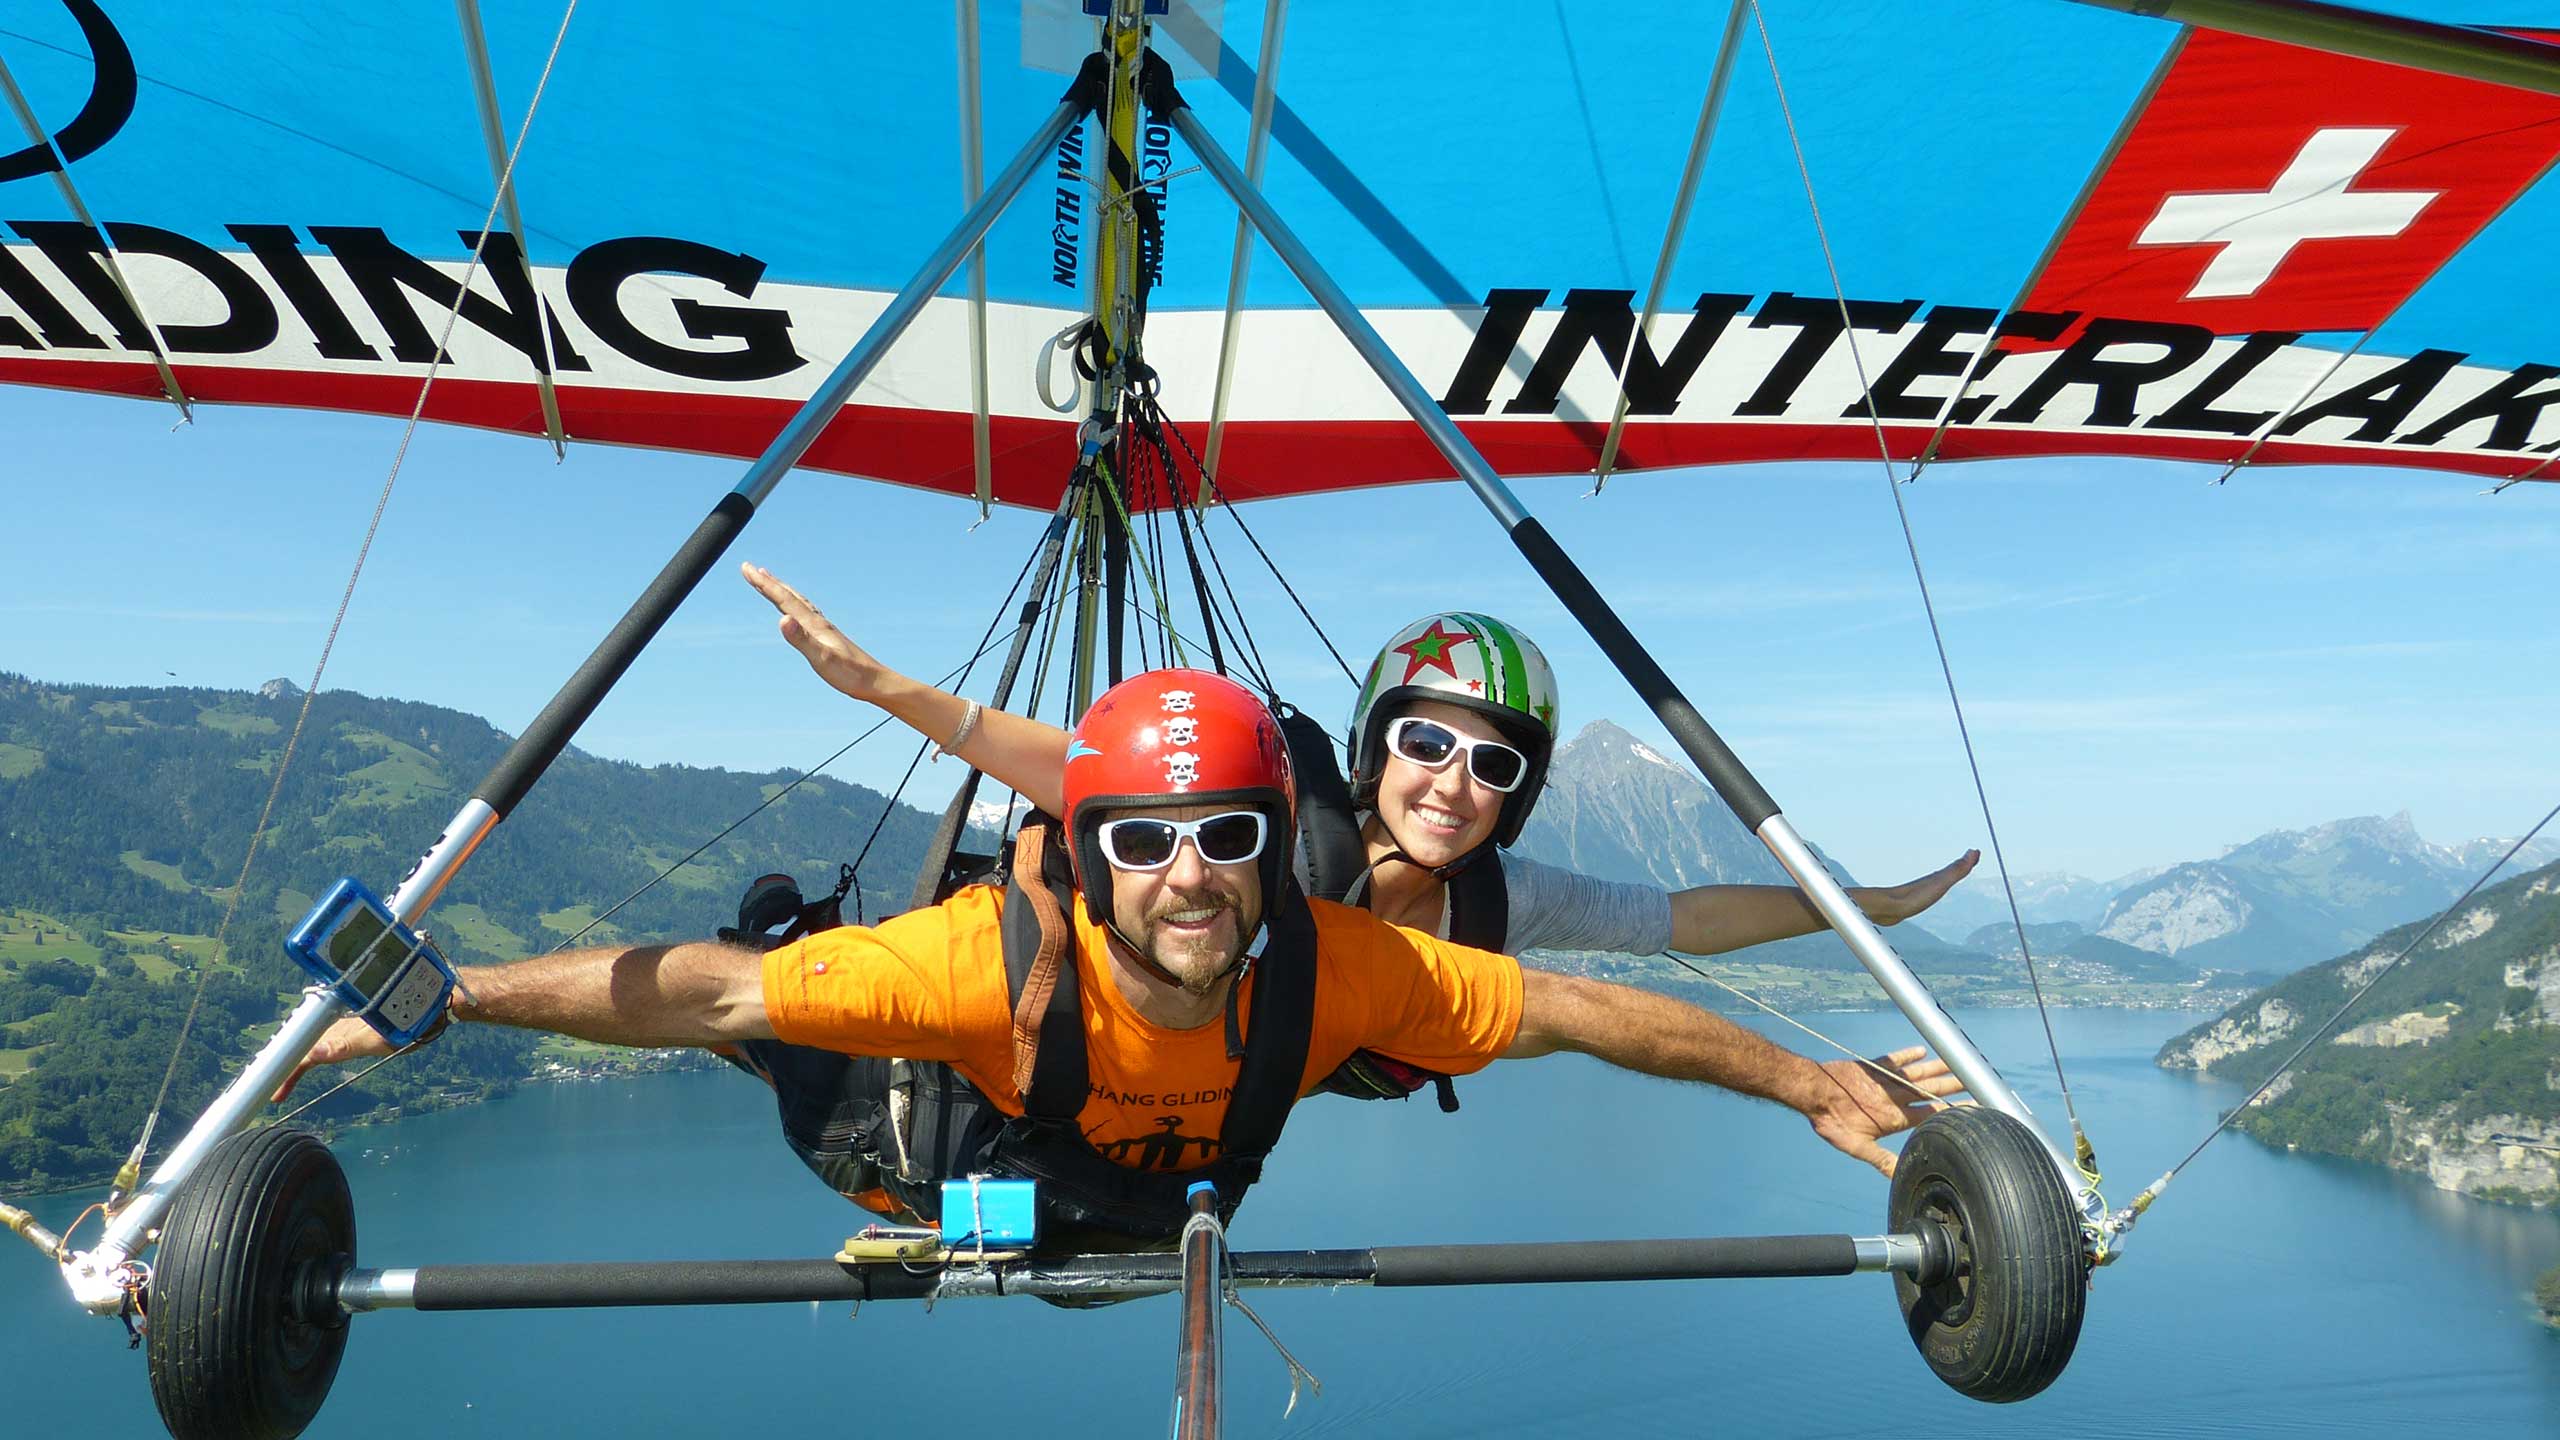 Hang Gliding Interlaken